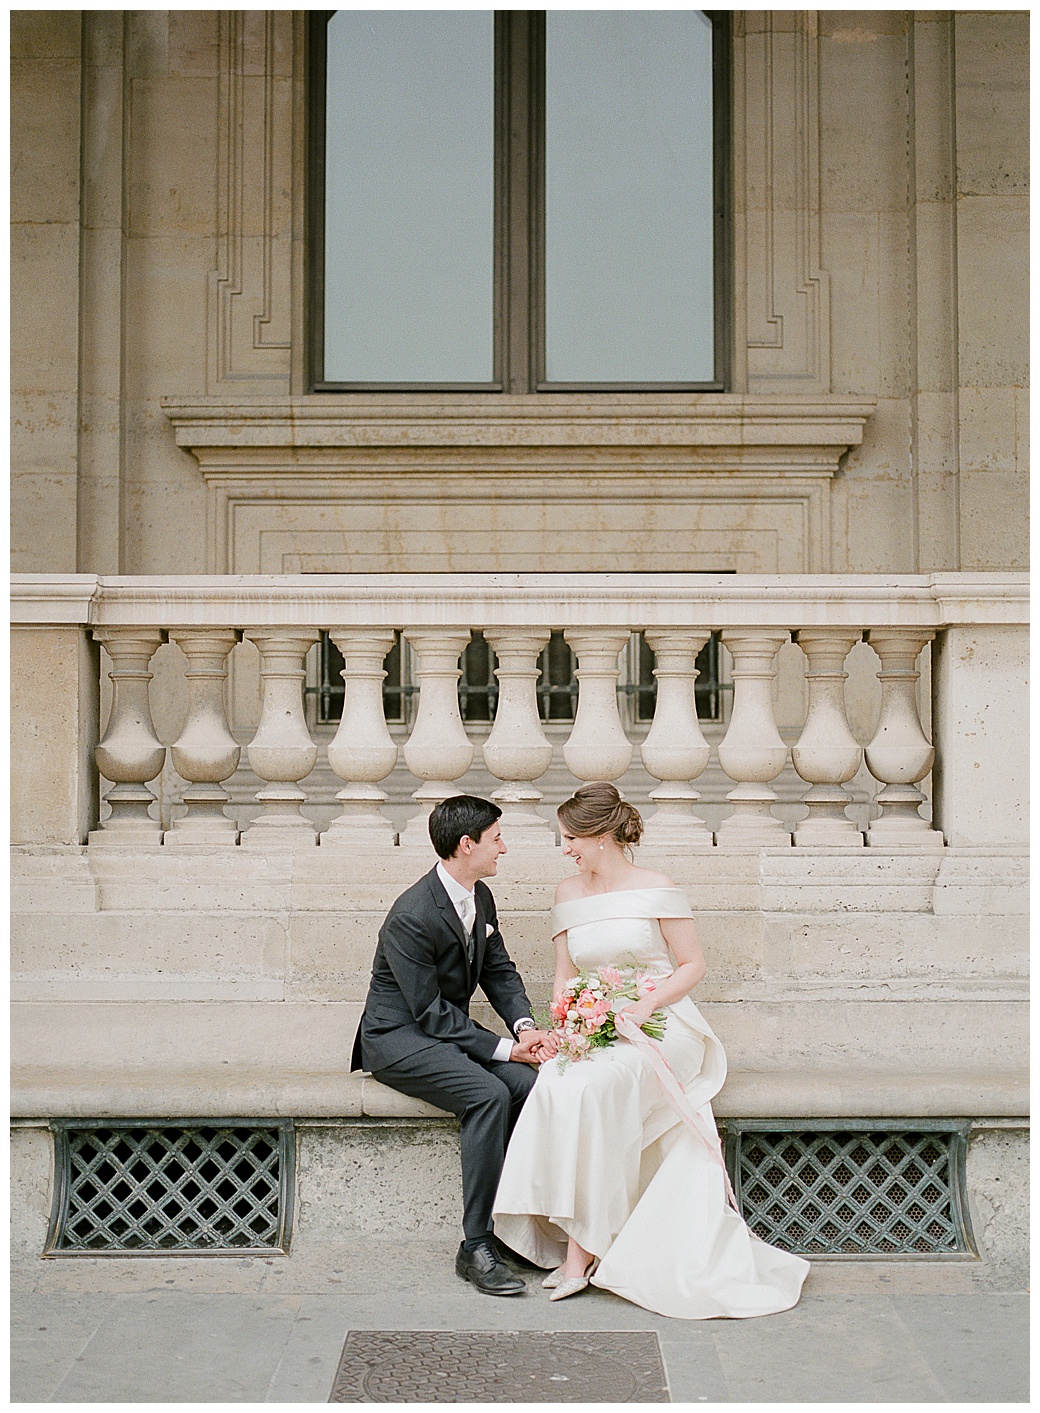 paris elopement, wedding officiant in paris, paris wedding, brides bouquet